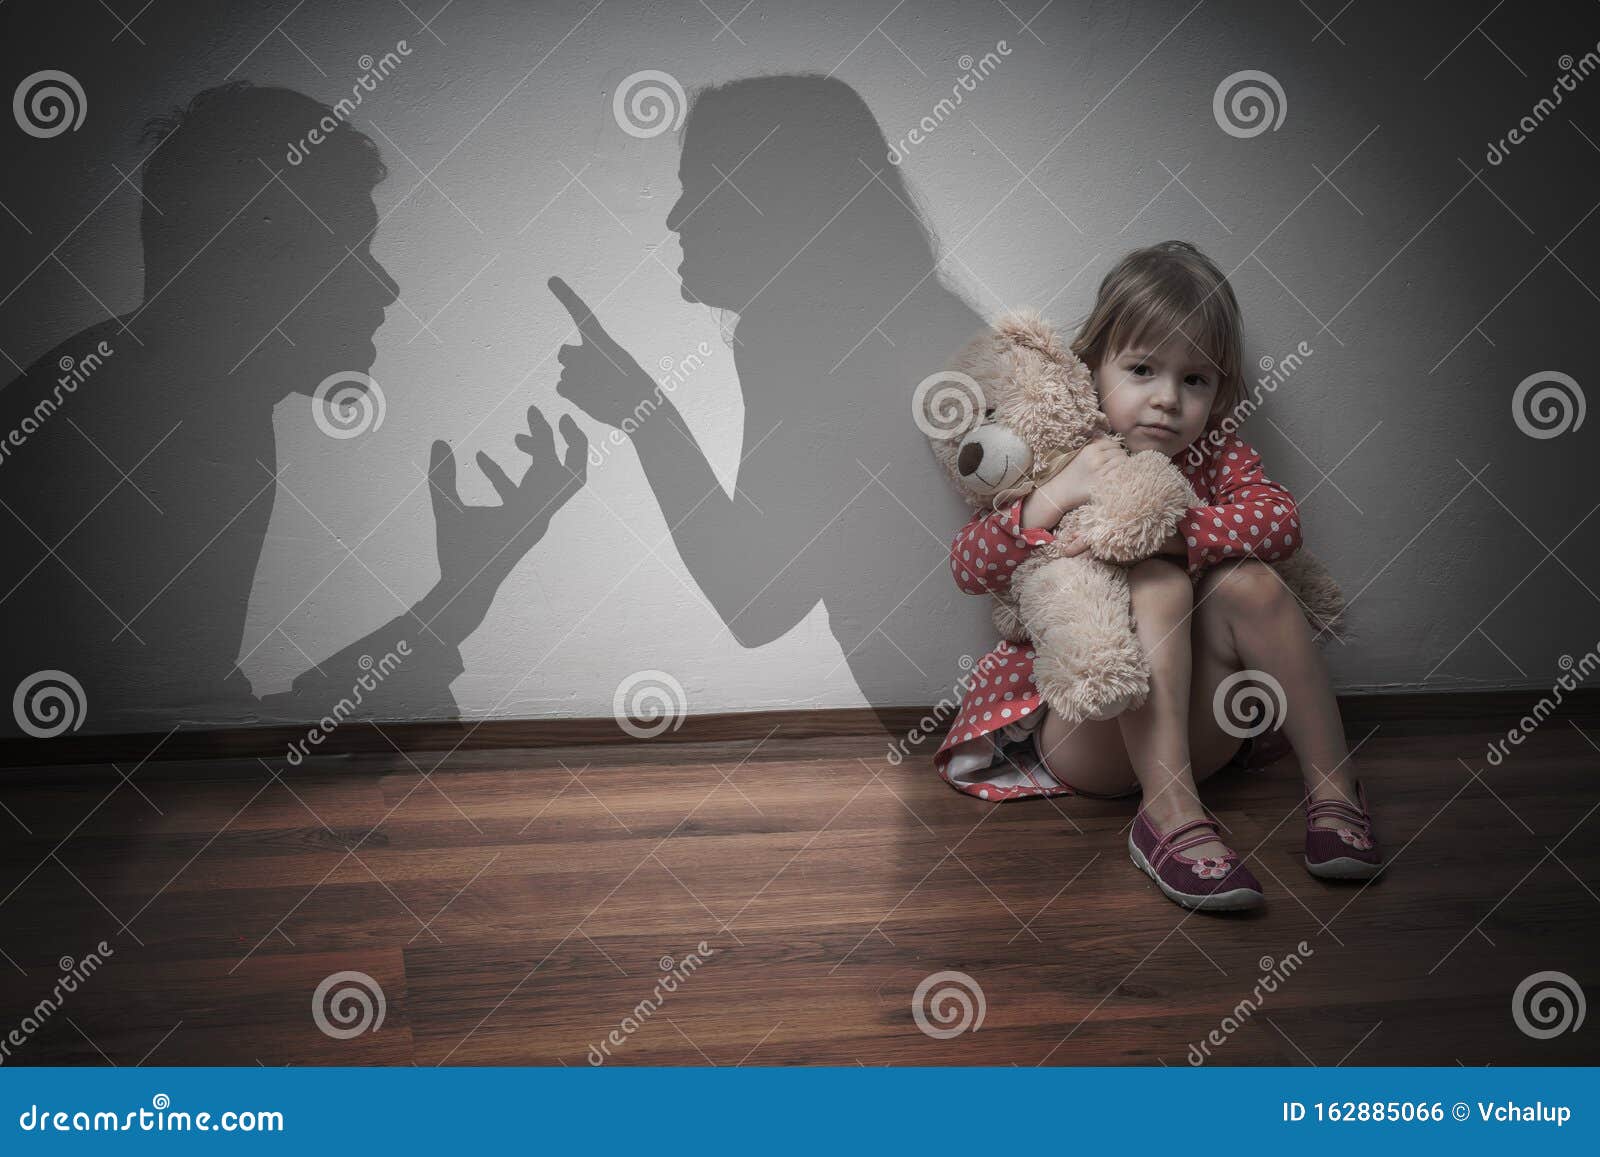 divorce concept. sad child is sitting at floor when parents argue.